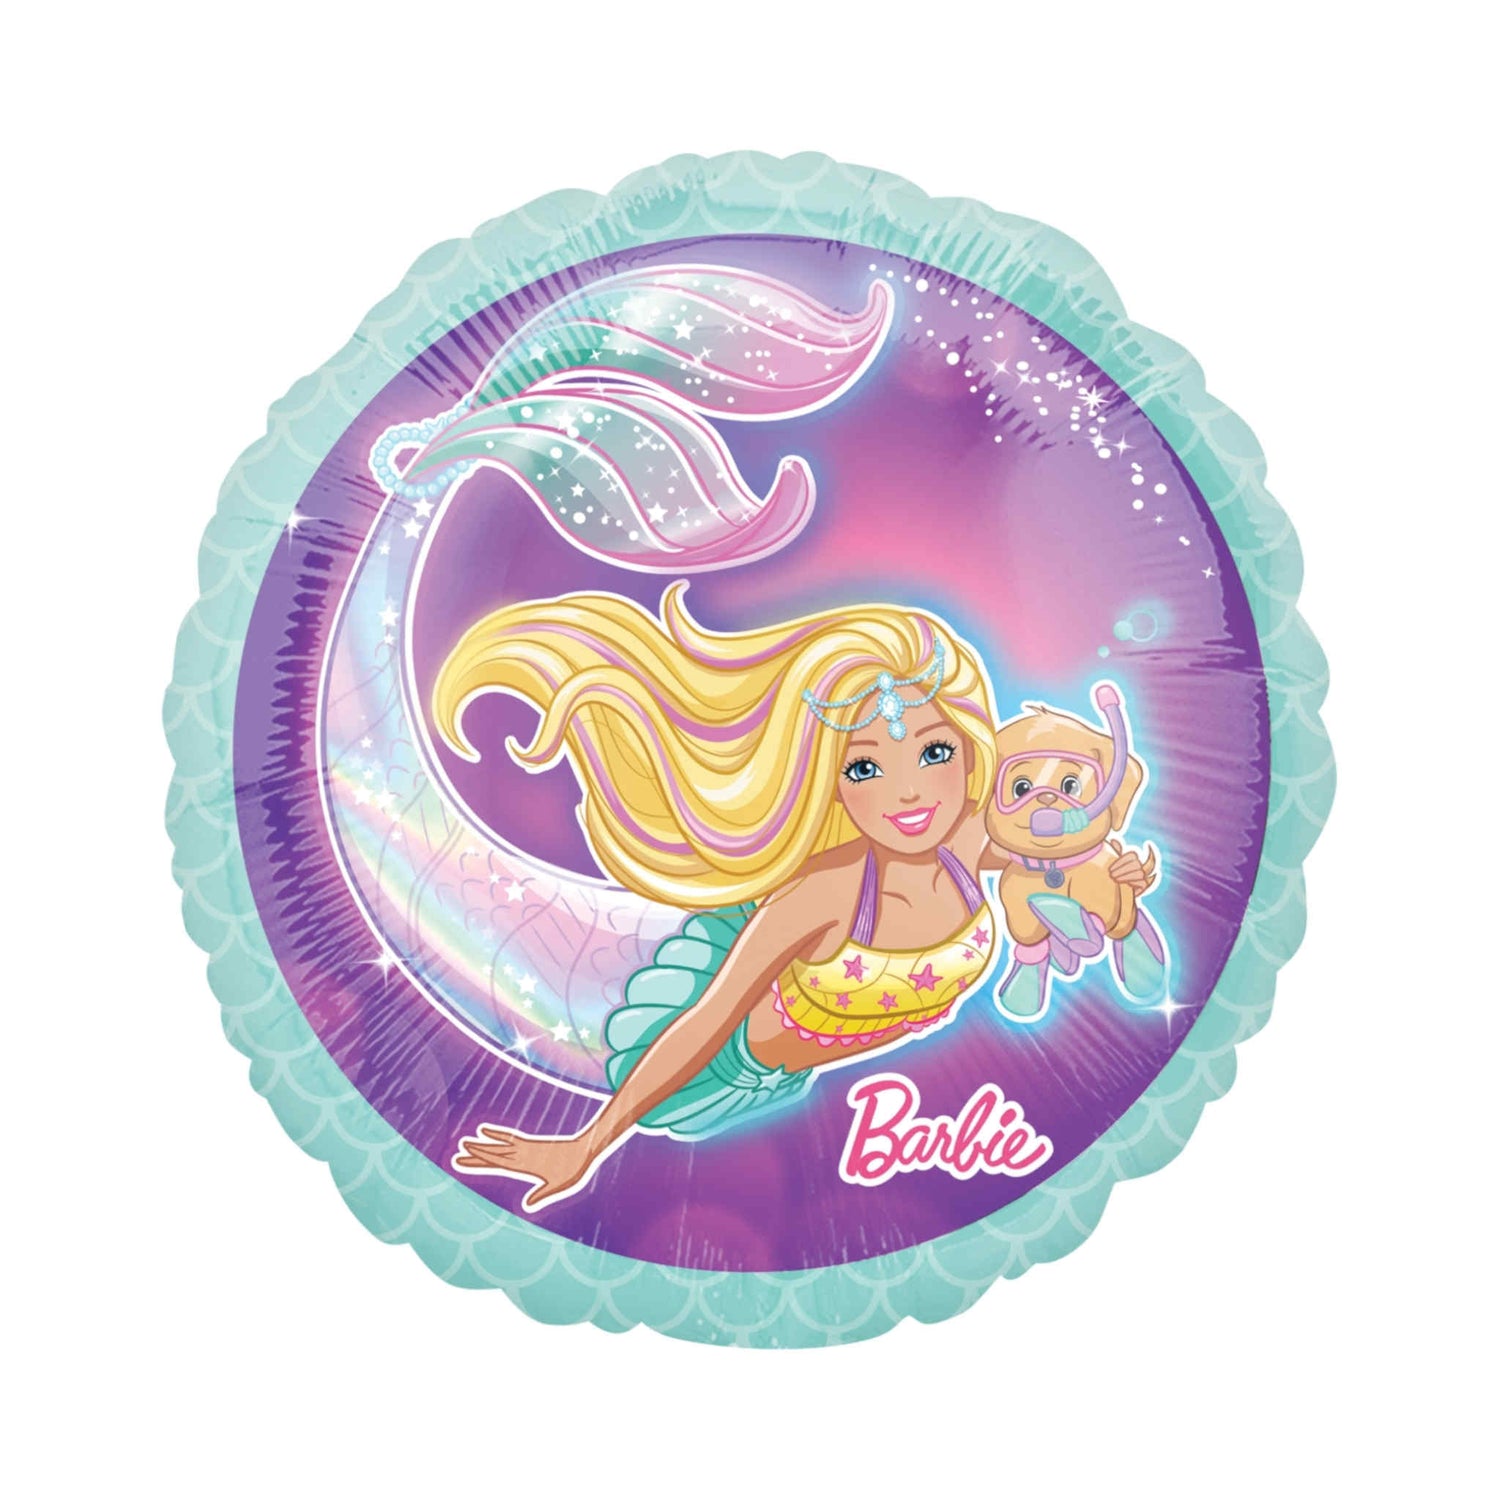 Barbie Mermaid Foil Balloon | 17 inch